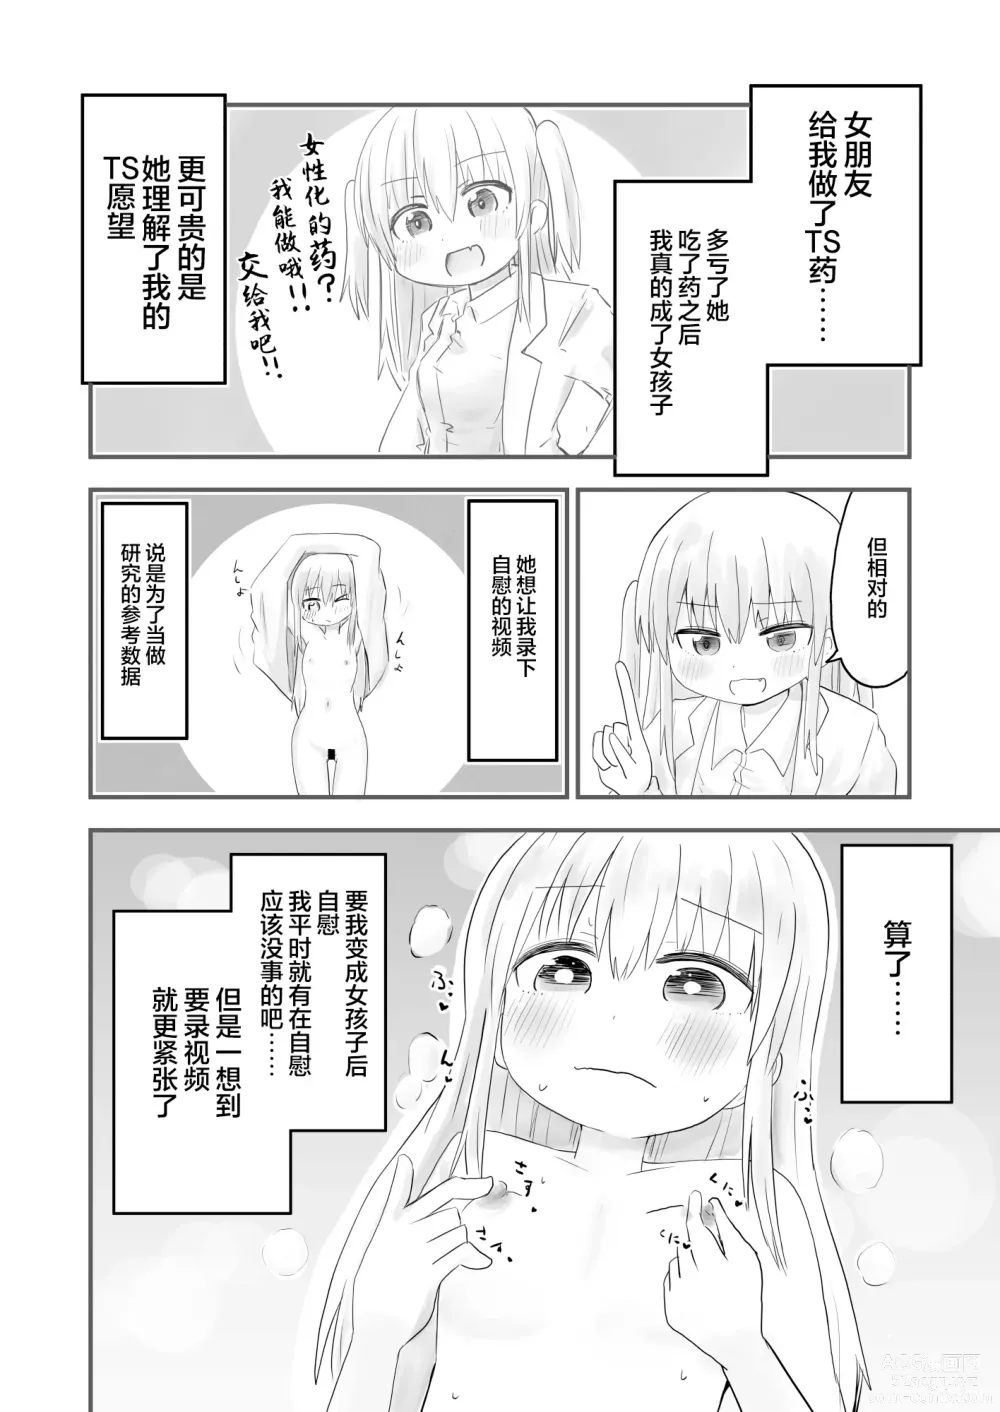 Page 5 of doujinshi TS Jii TS Yuri